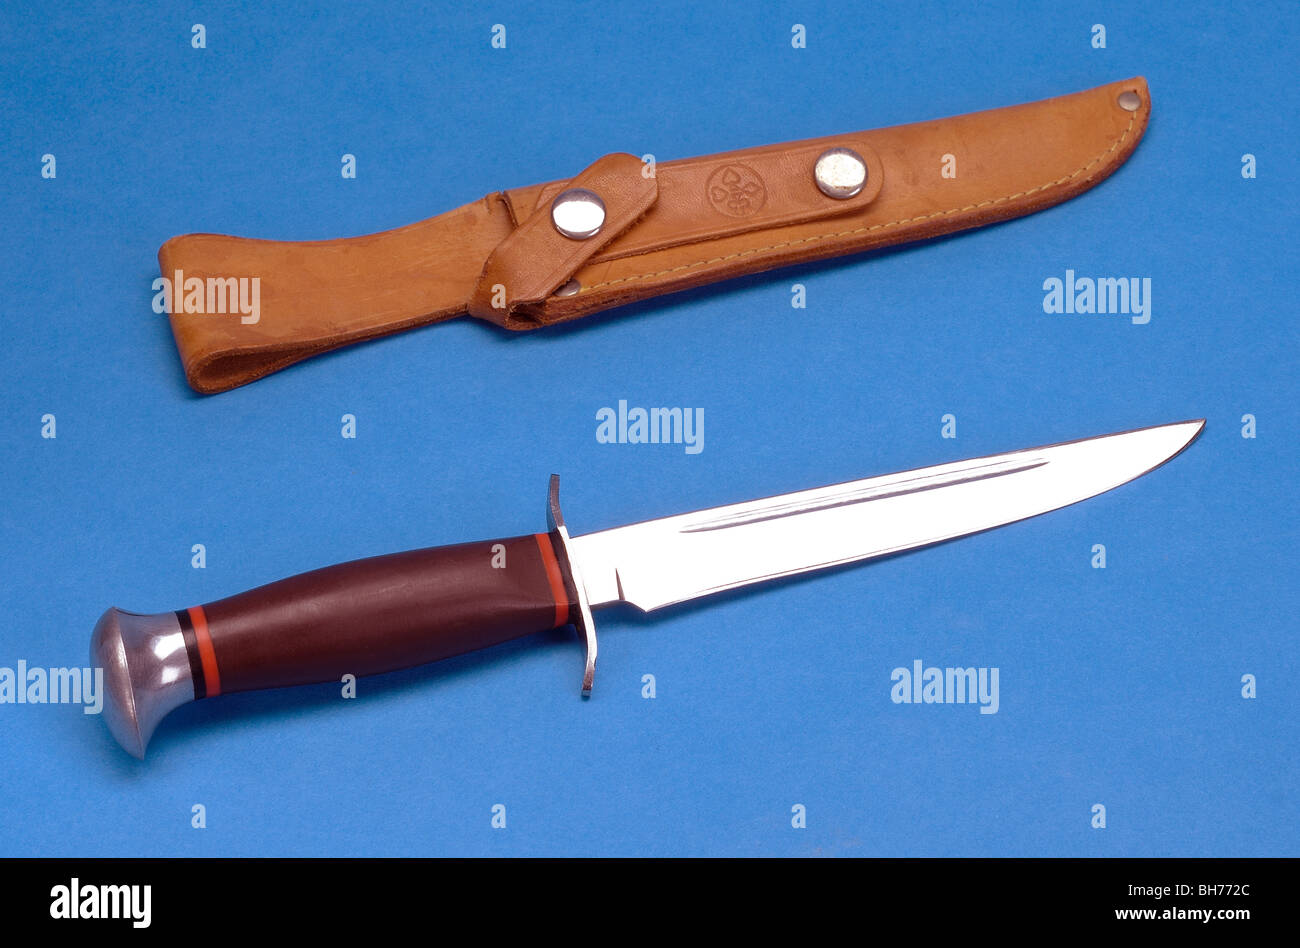 A brasilien stiletto knife Stock Photo